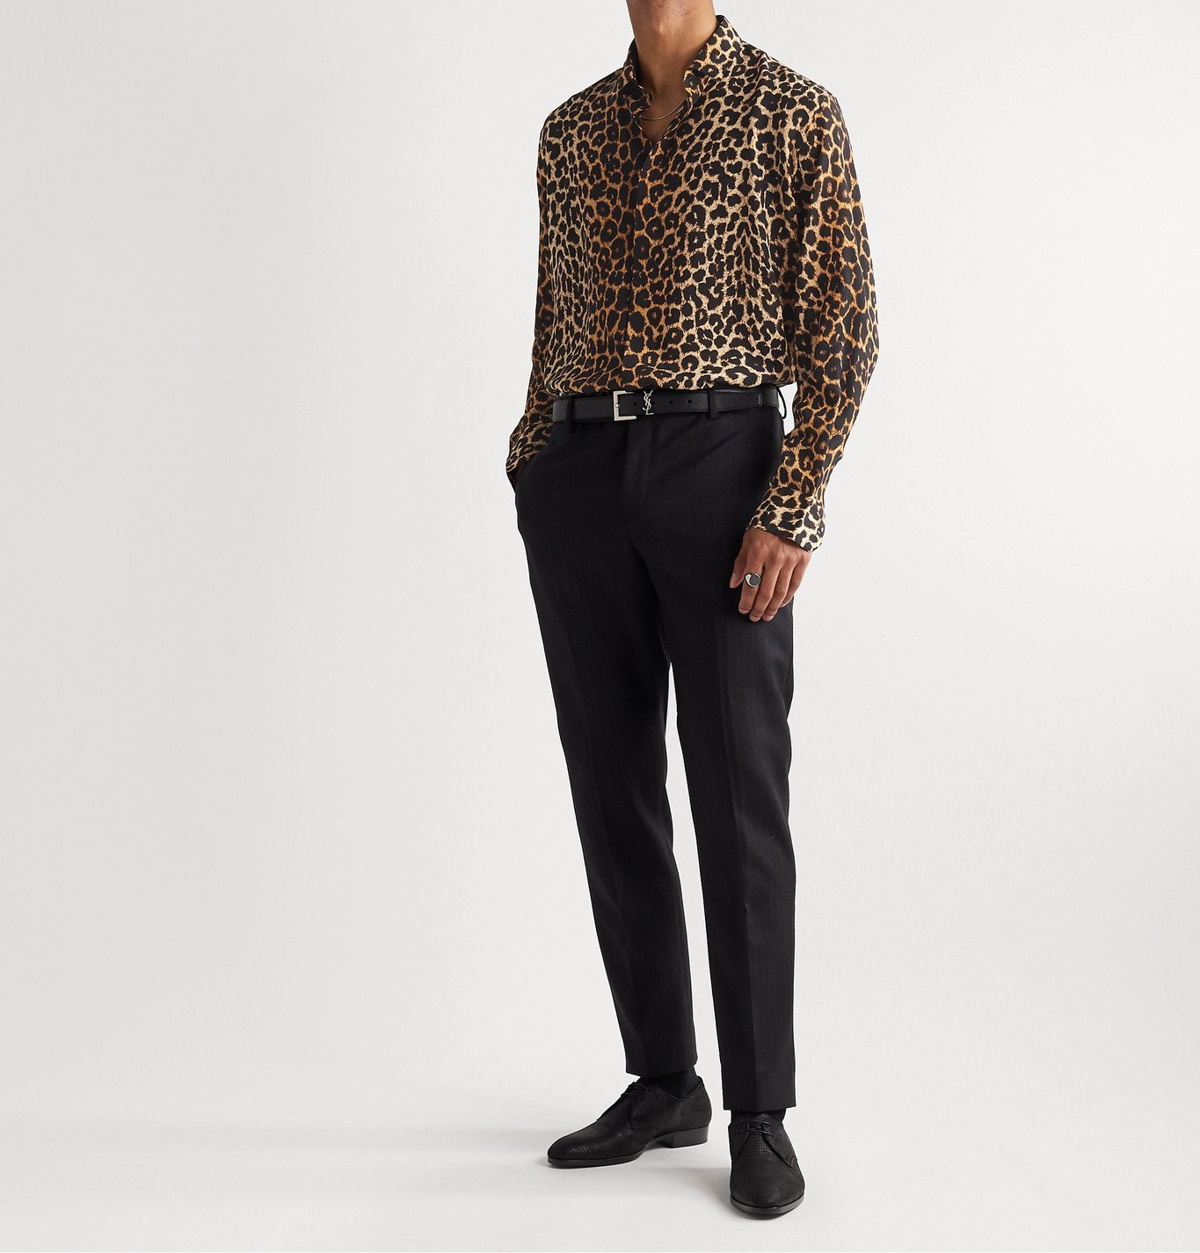 SAINT LAURENT - Leopard-Print Silk-Crepe Shirt - Neutrals Saint